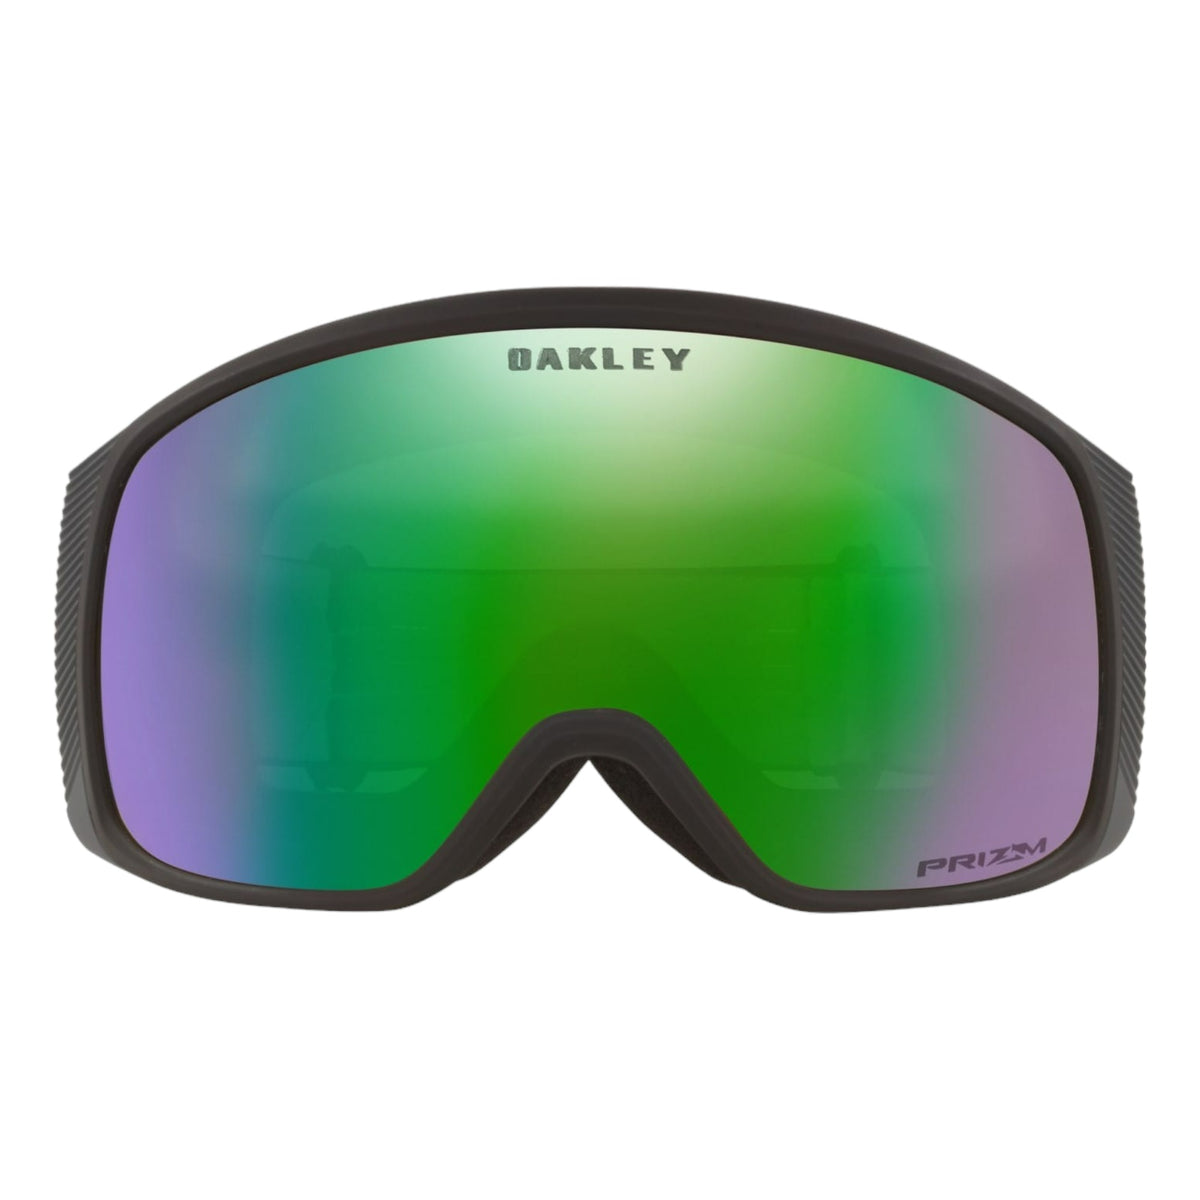 Les lunettes Oakley pour toutes vos activités estivales - Ekosport le blog